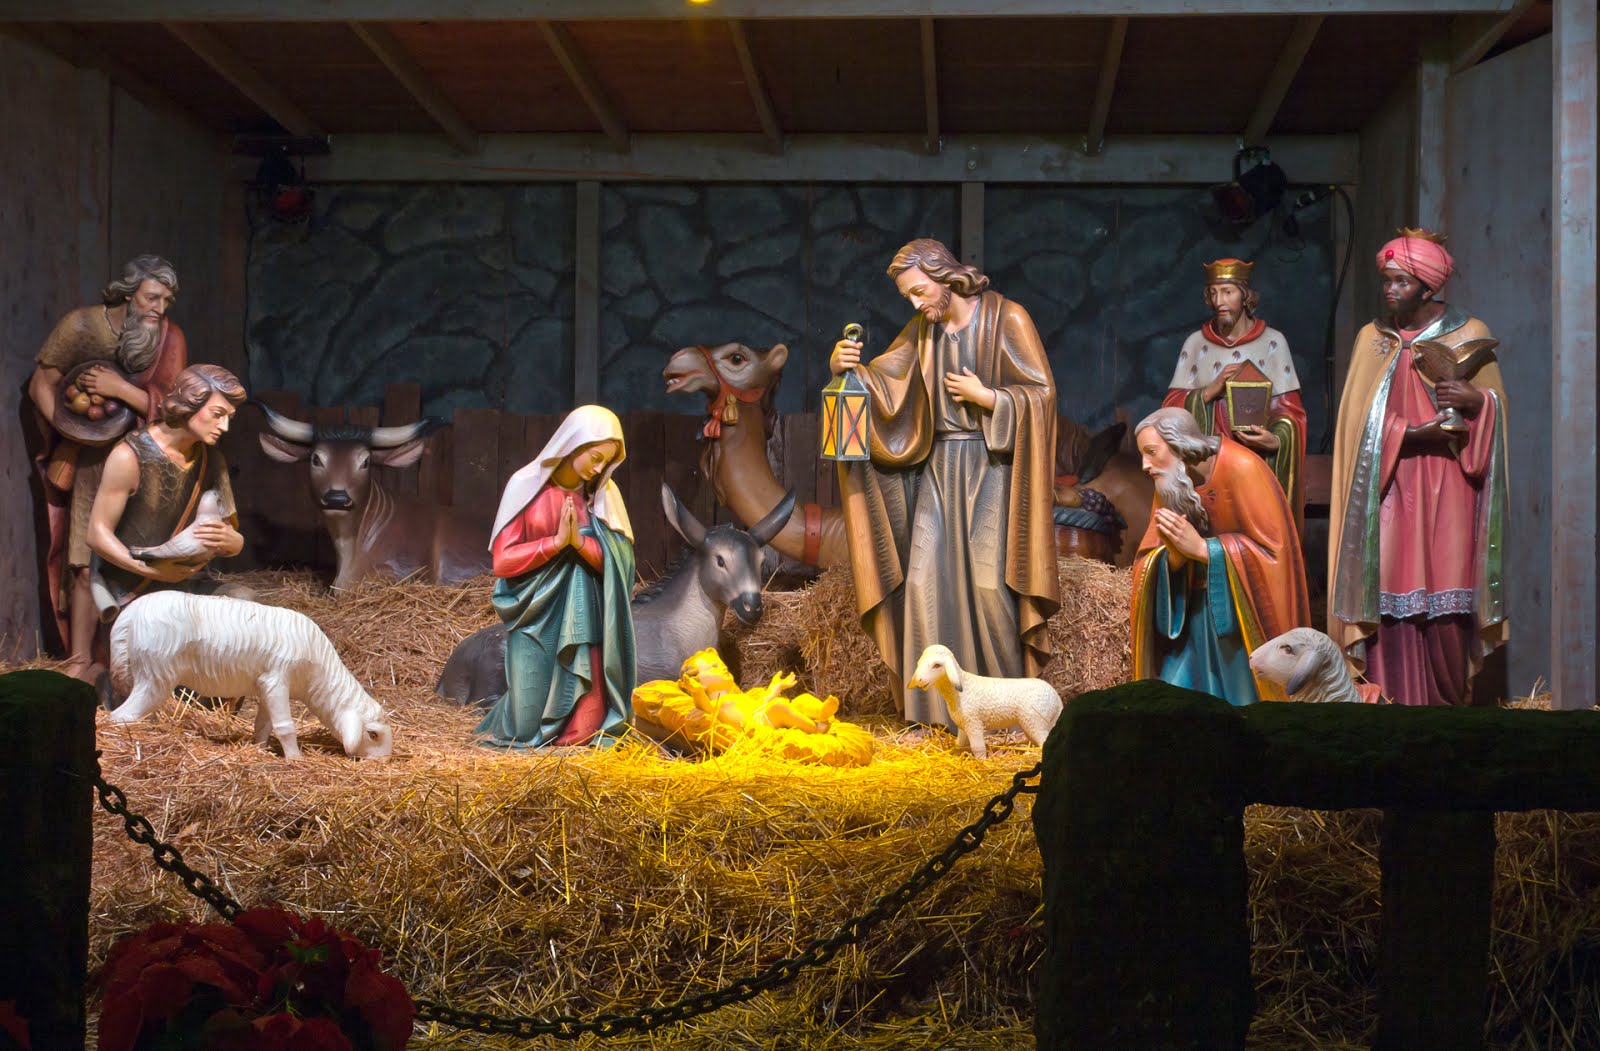 imagenes del niño jesus en navidad - 33 imágenes del Nacimiento de Jesús, Pesebres, Sagrada 